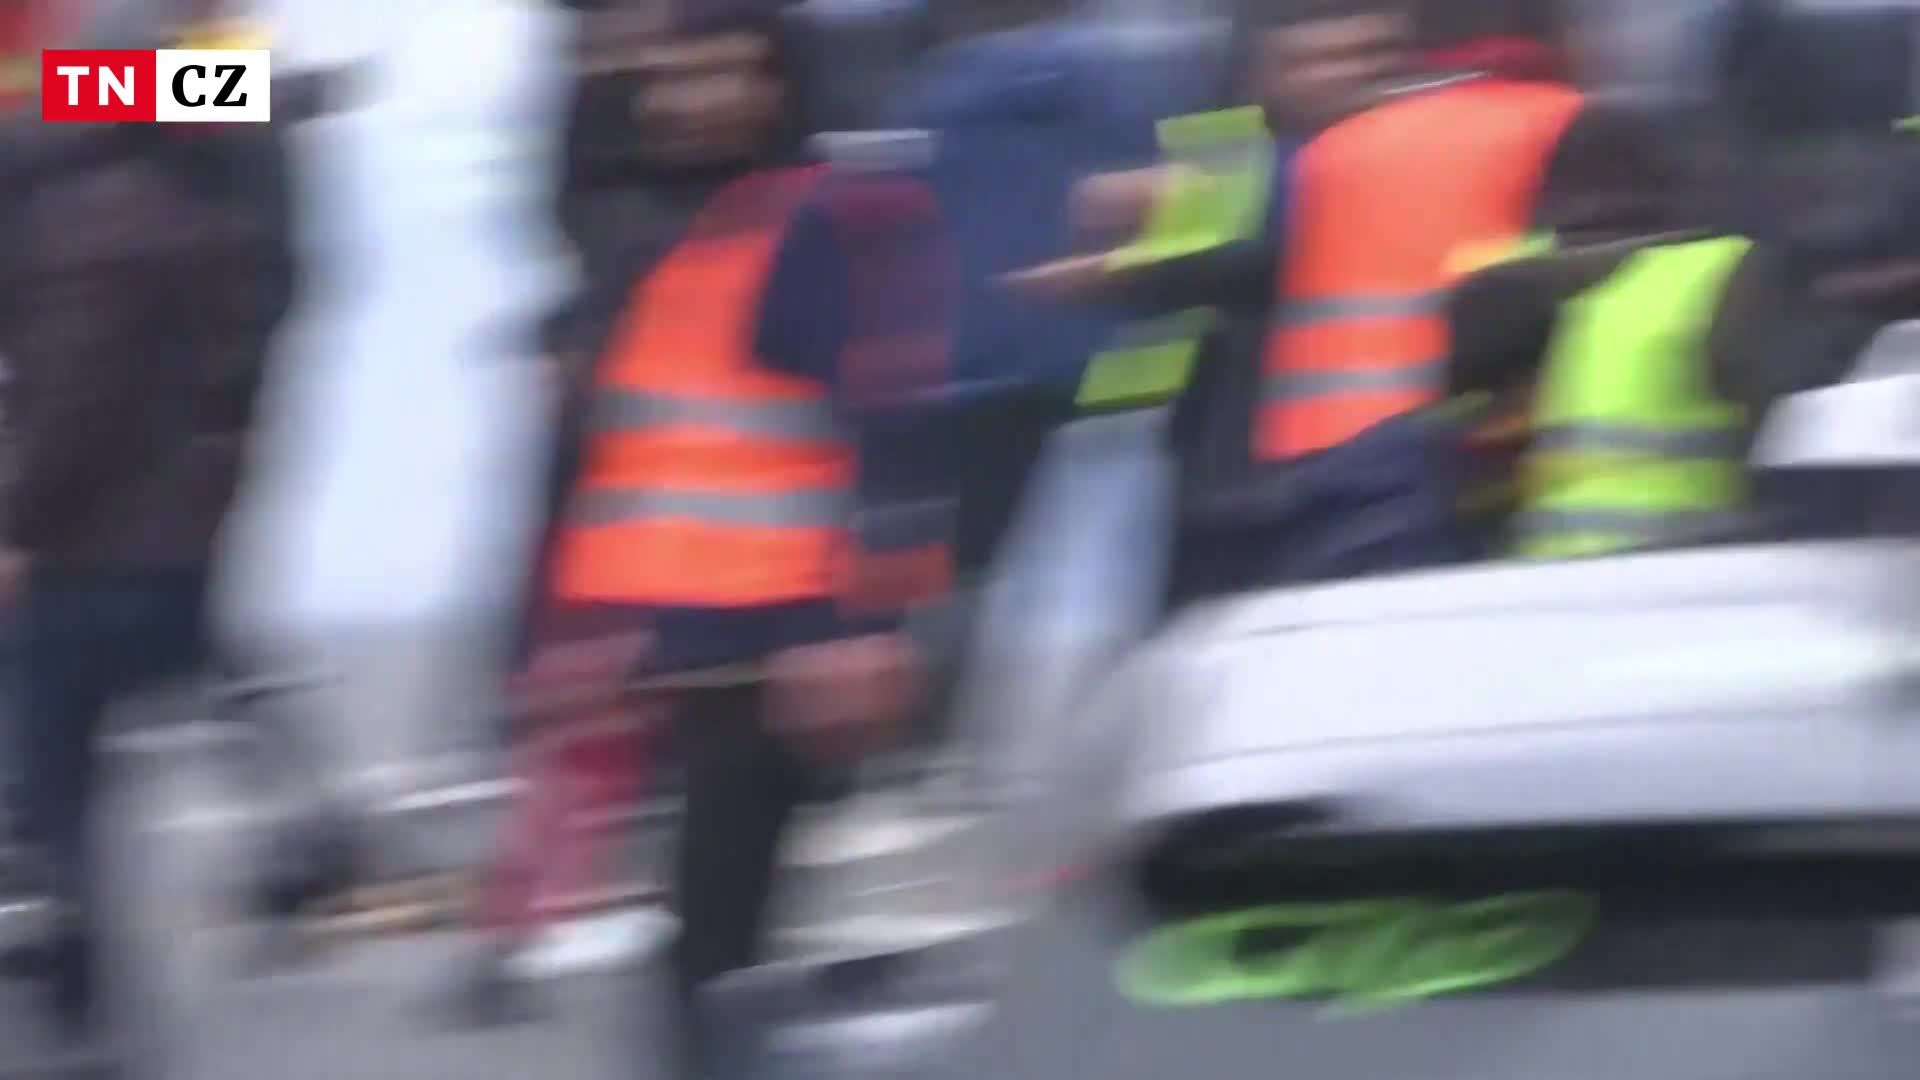 Muž zastřelil tři lidi, skončil na psychiatrii. Pařížané se bouří a demonstruují